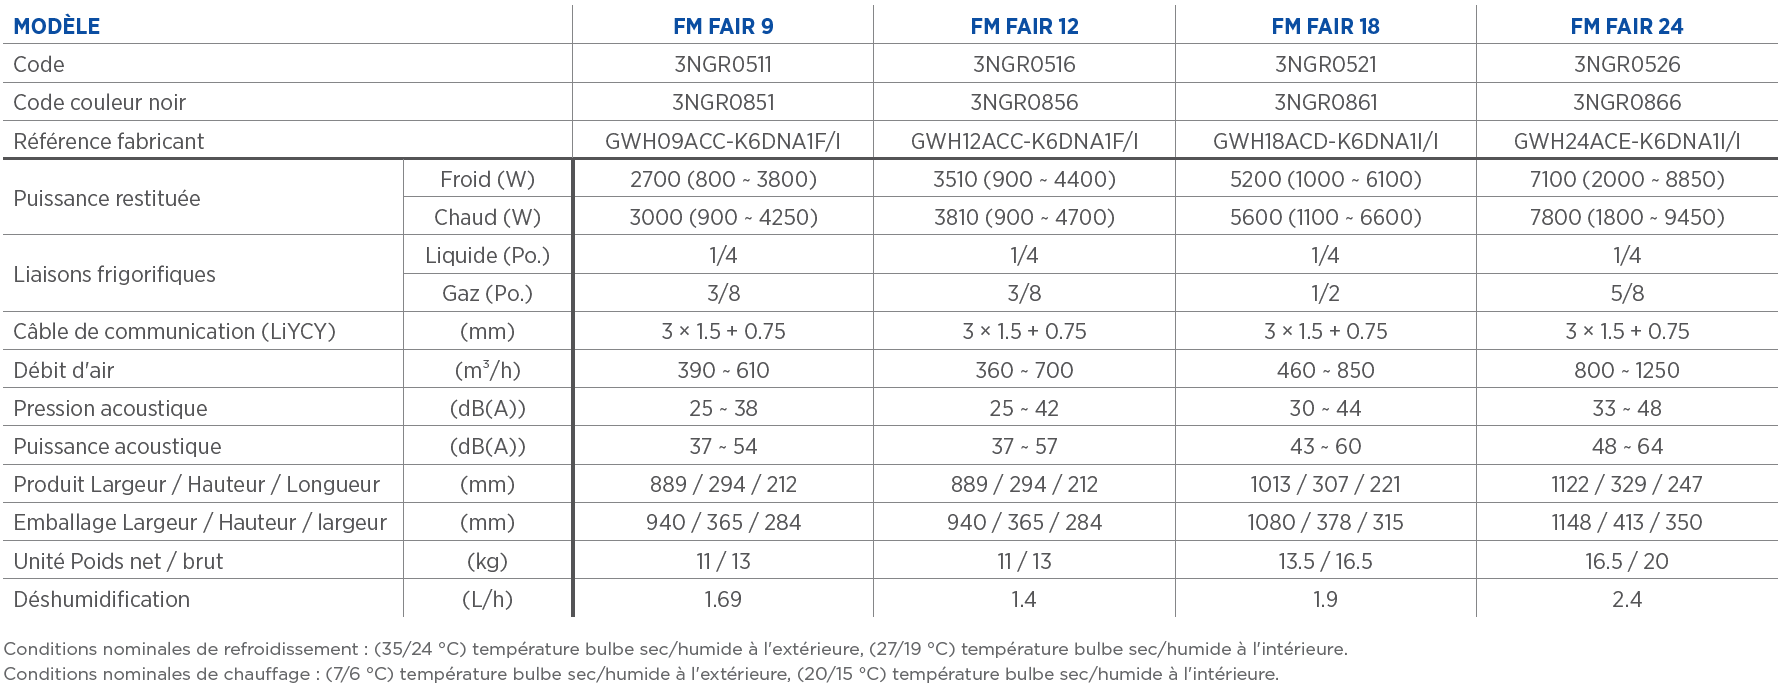 Tableau des caractéristiques techniques des monosplit fair 9, fair 12, fair 18 et fair 24